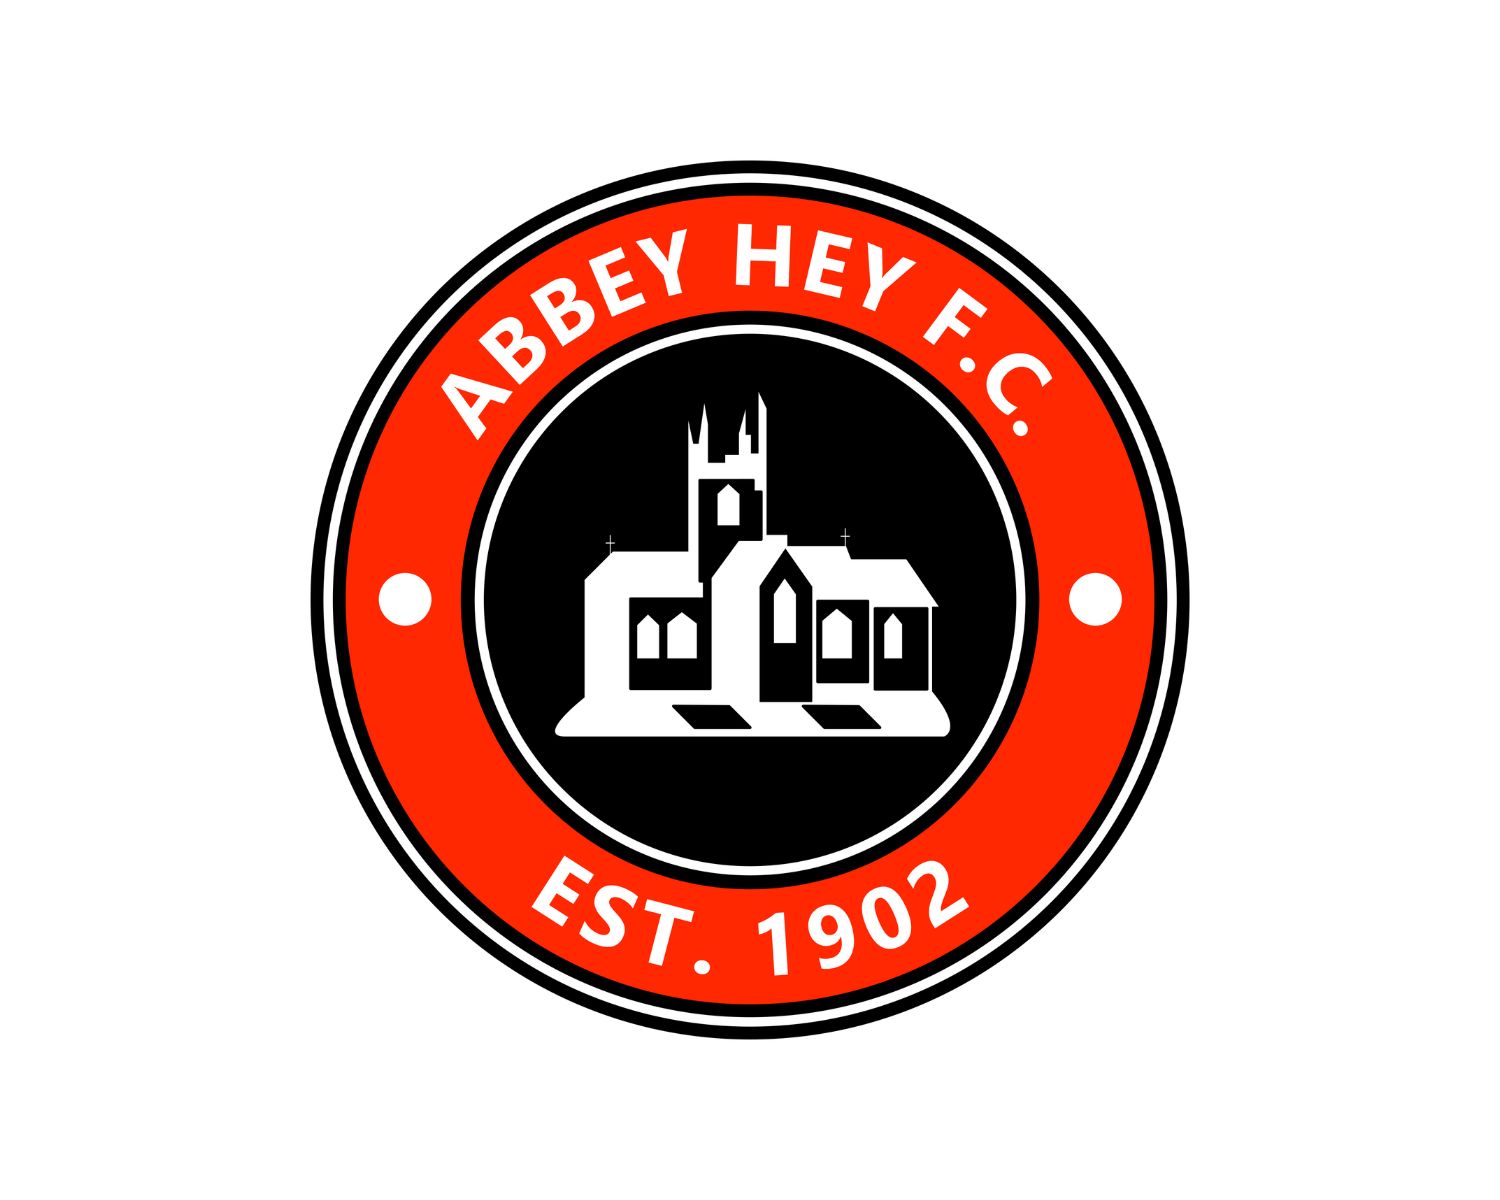 abbey-hey-fc-17-football-club-facts